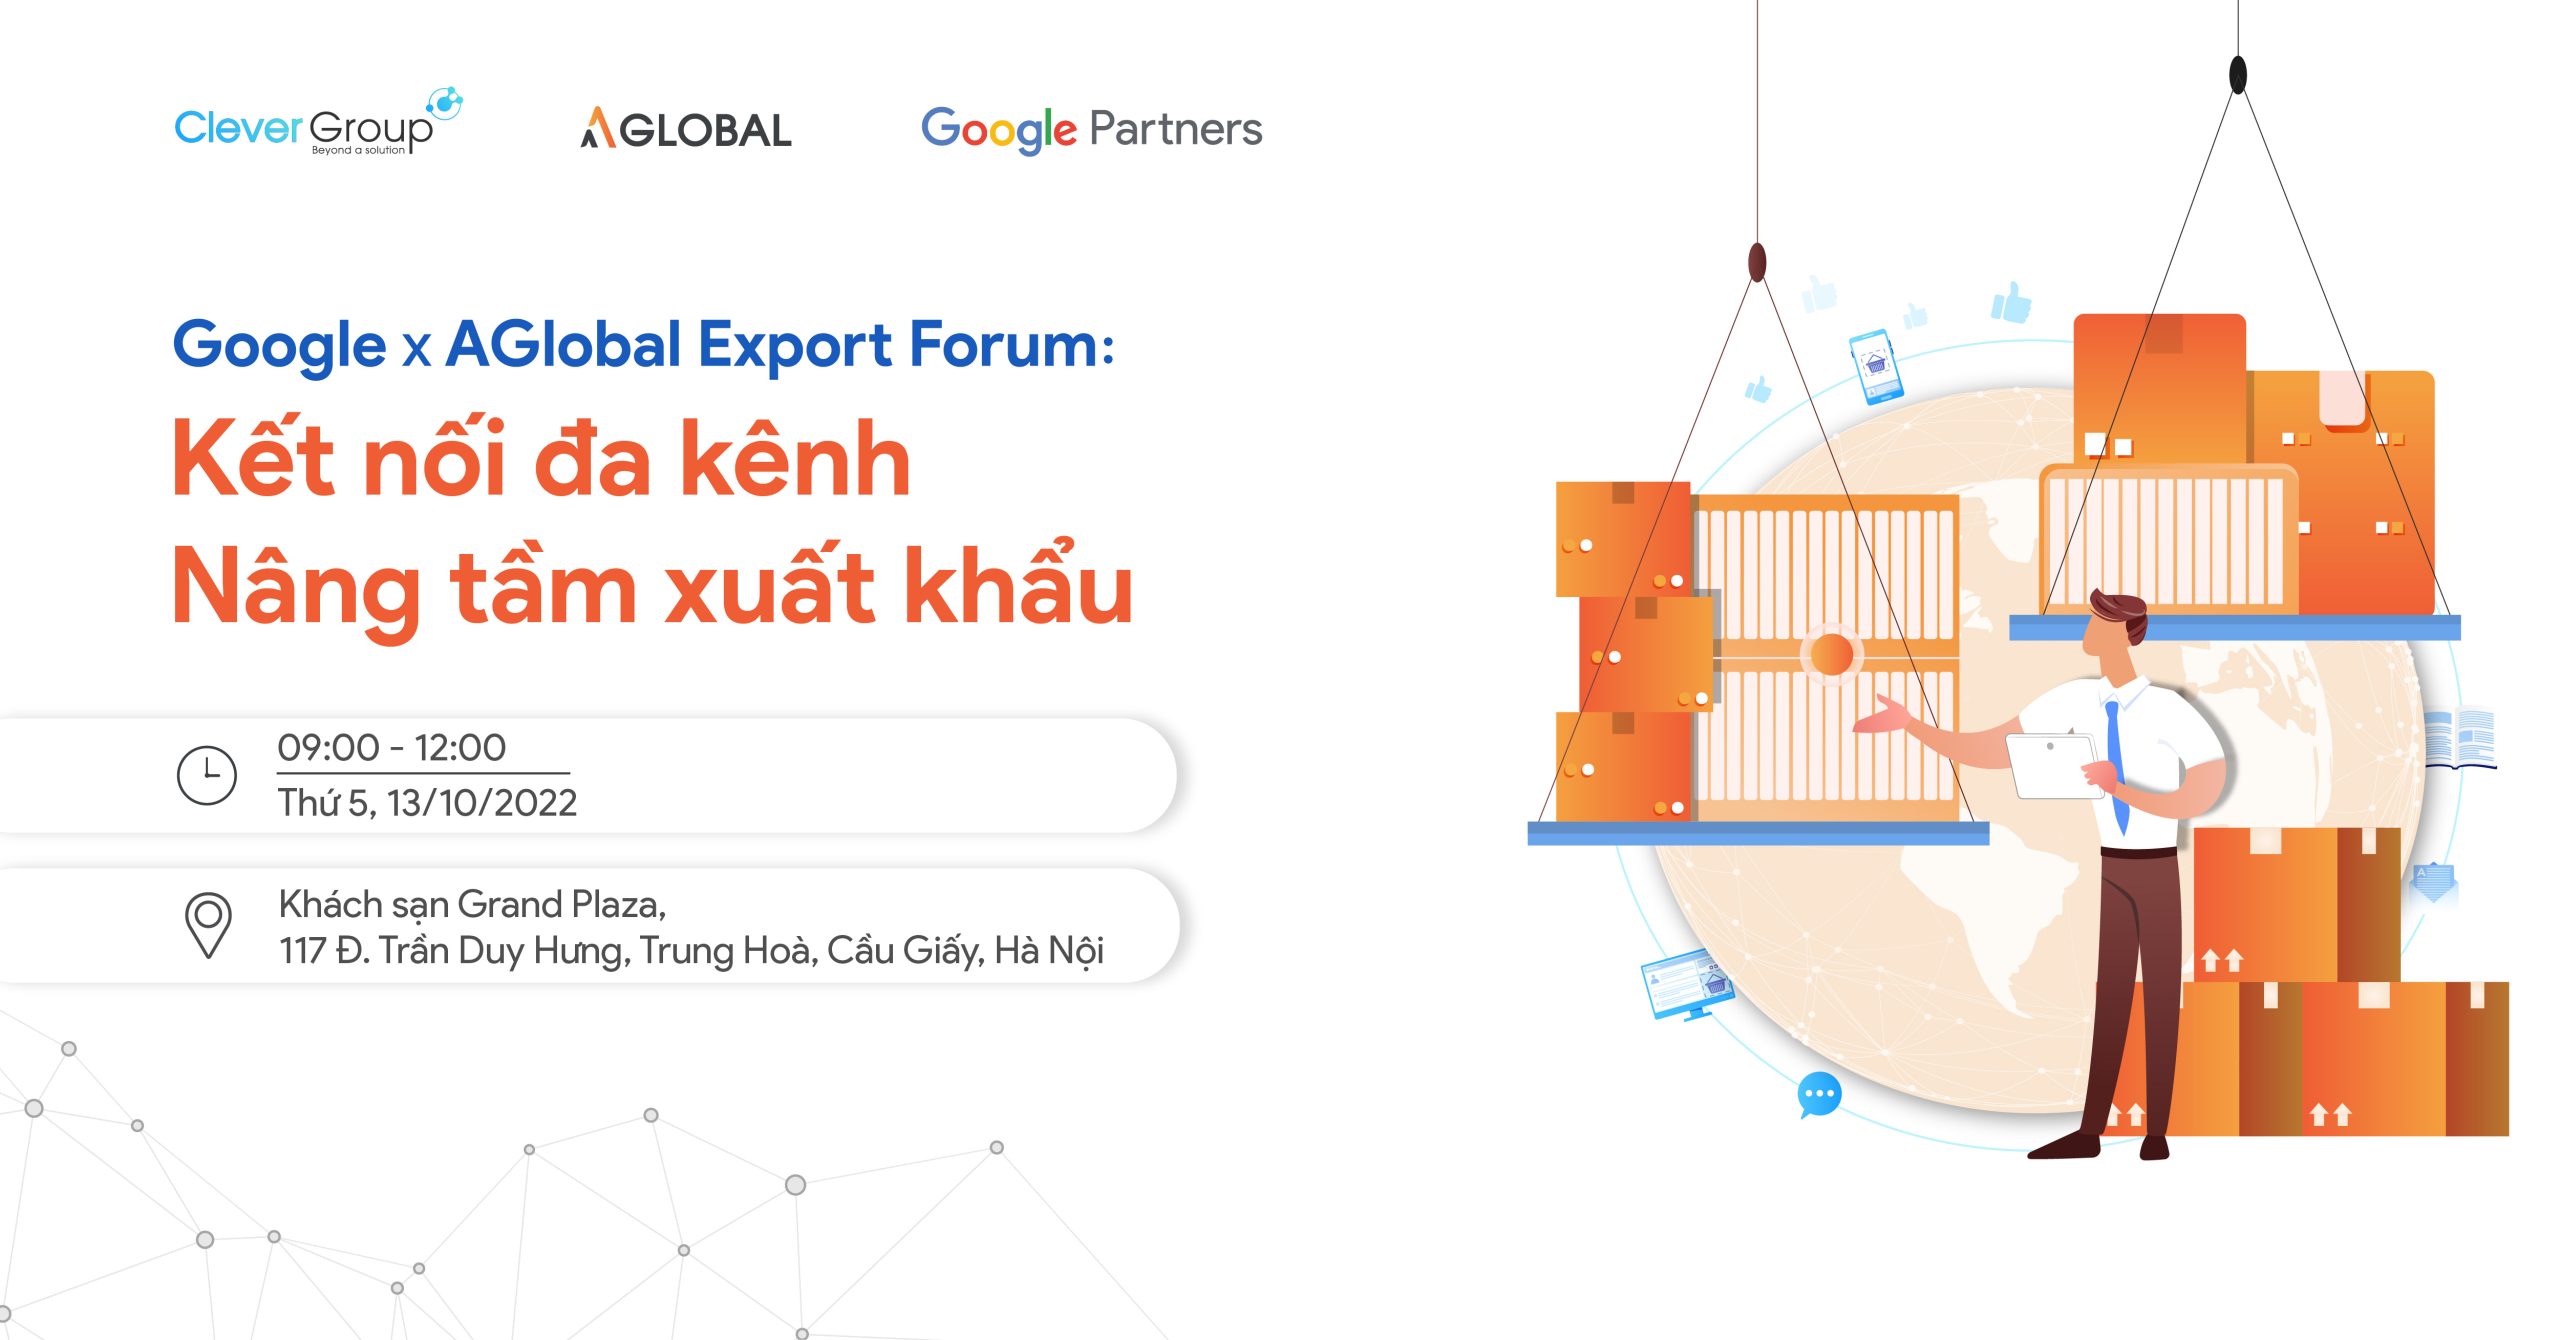 Clever Group kết hợp cùng Google tổ chức hội thảo “Google x AGlobal Export Forum: Kết nối đa kênh, nâng tầm xuất khấu”